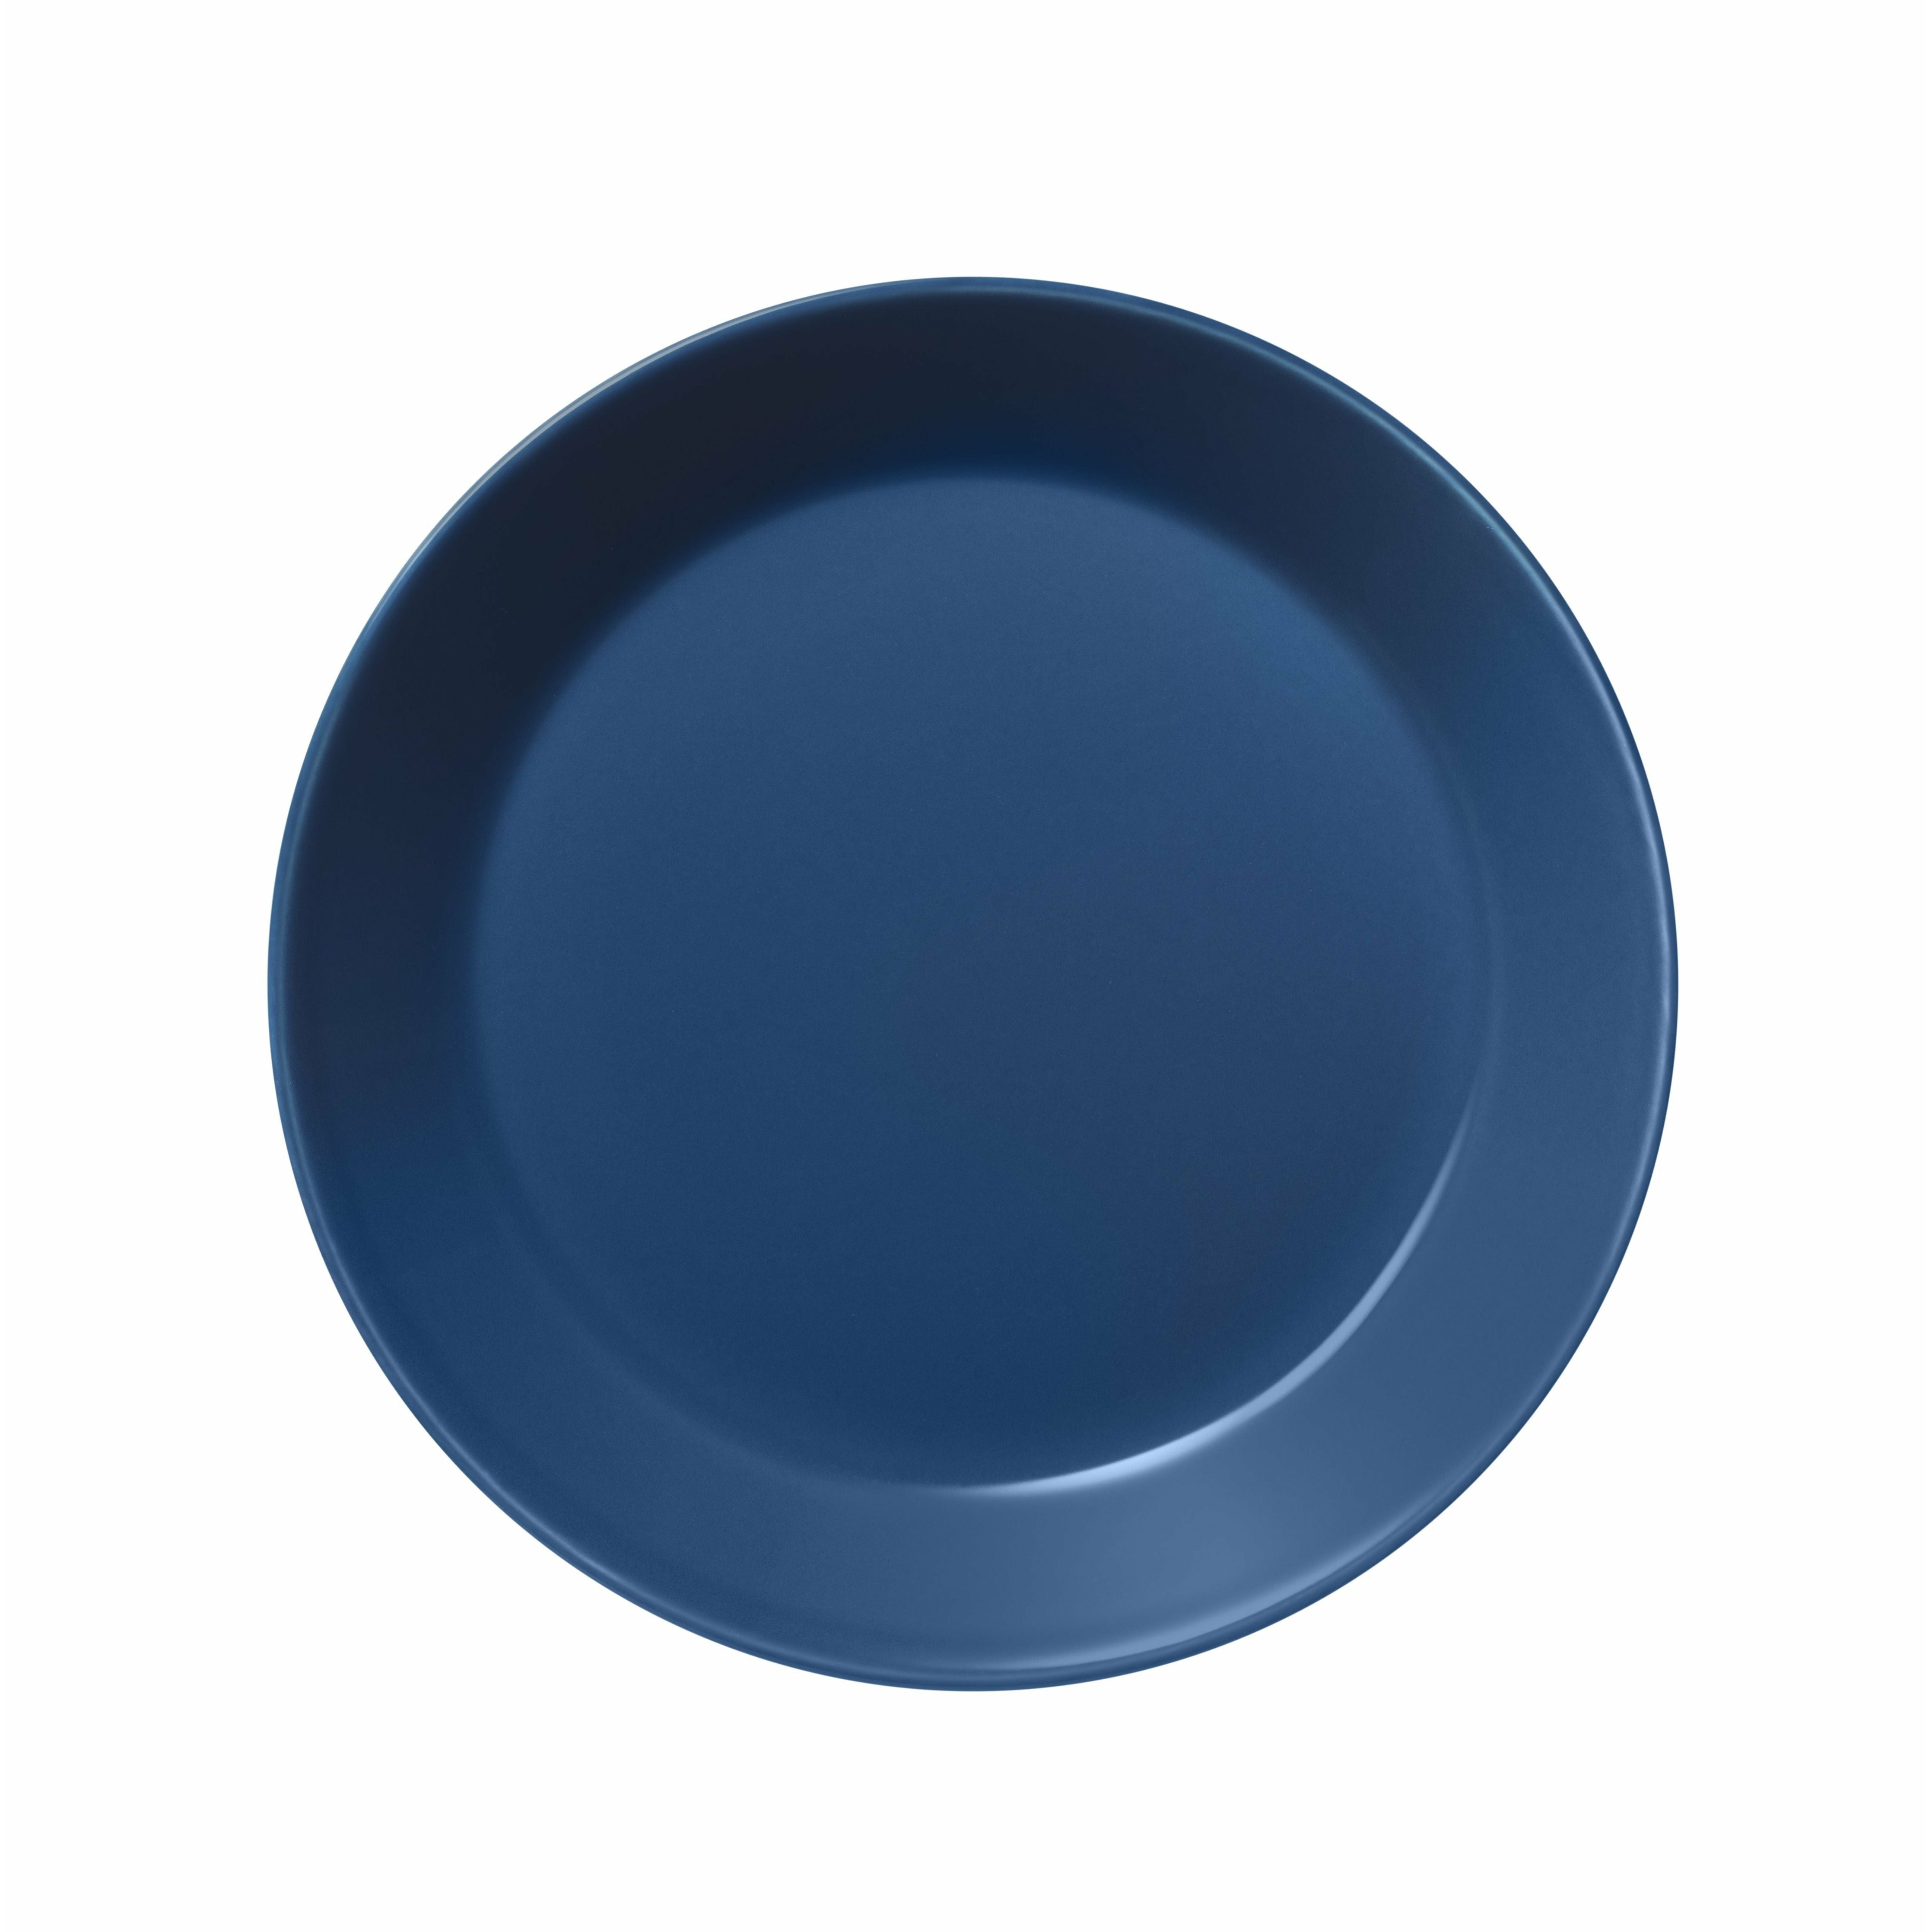 Iittala Teema Plate Flat 17cm, Vintage Blue